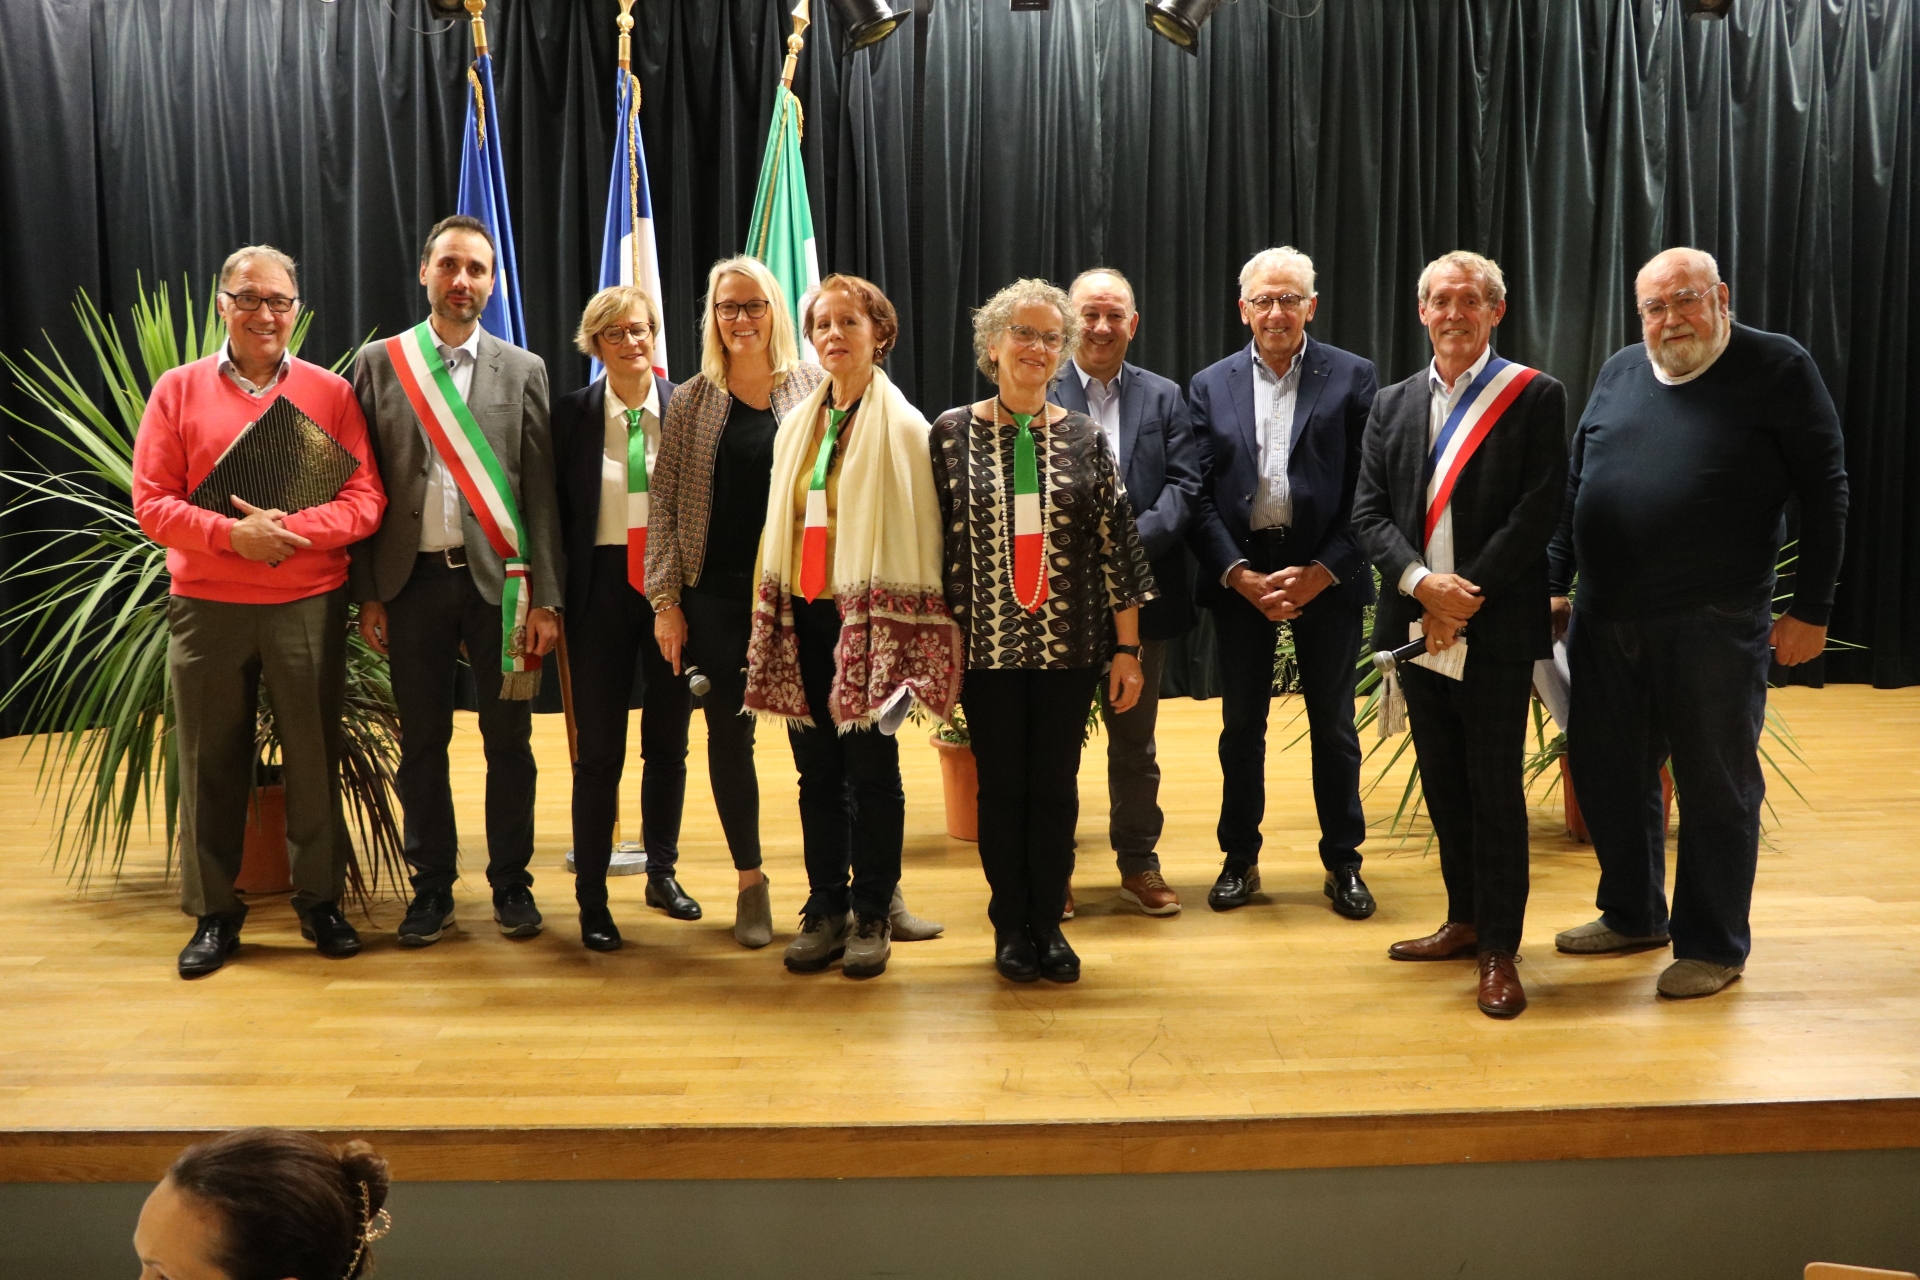 Gli italiani e il gruppo francese à Fontaines pour fêter le 25ème anniversaire du jumelage Fontaines /Paciano.